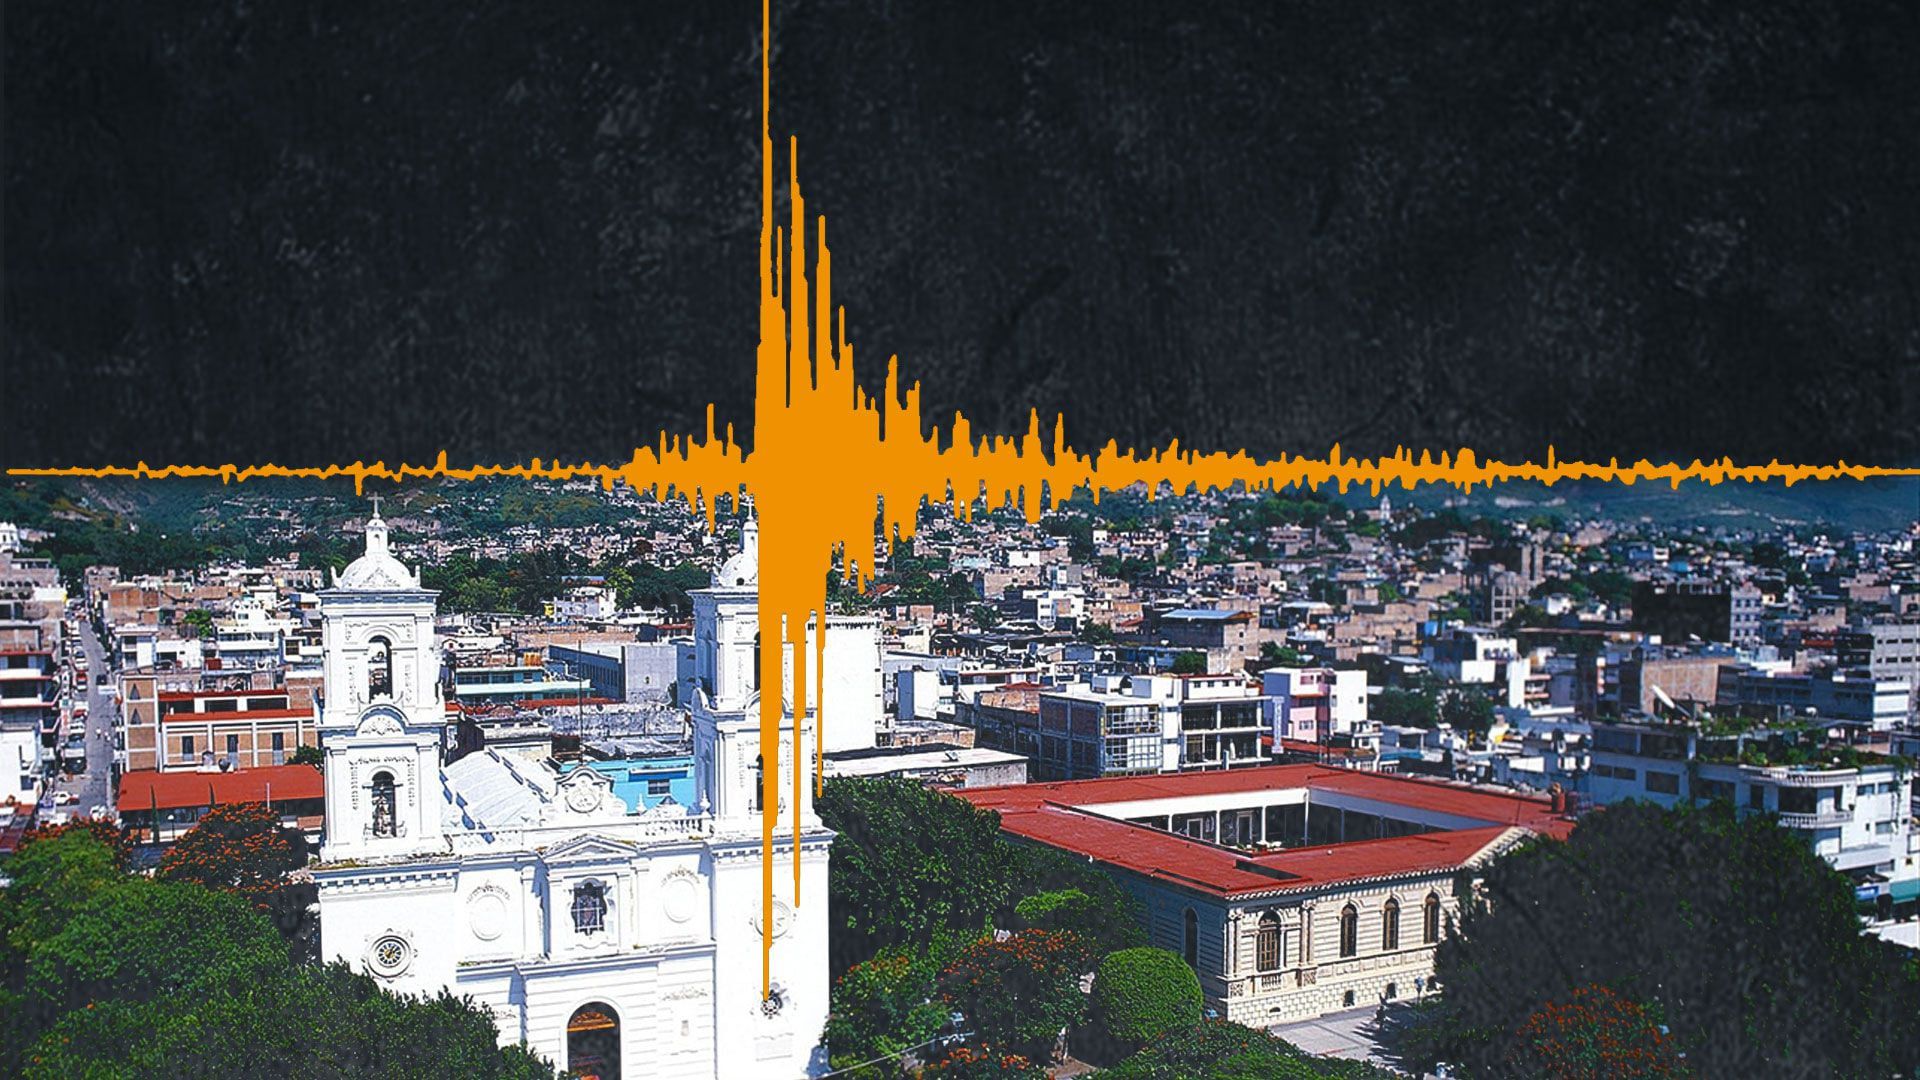 México es un país sísmico por lo que es importante mantenerse alerta ante movimientos telúricos. (Infobae)